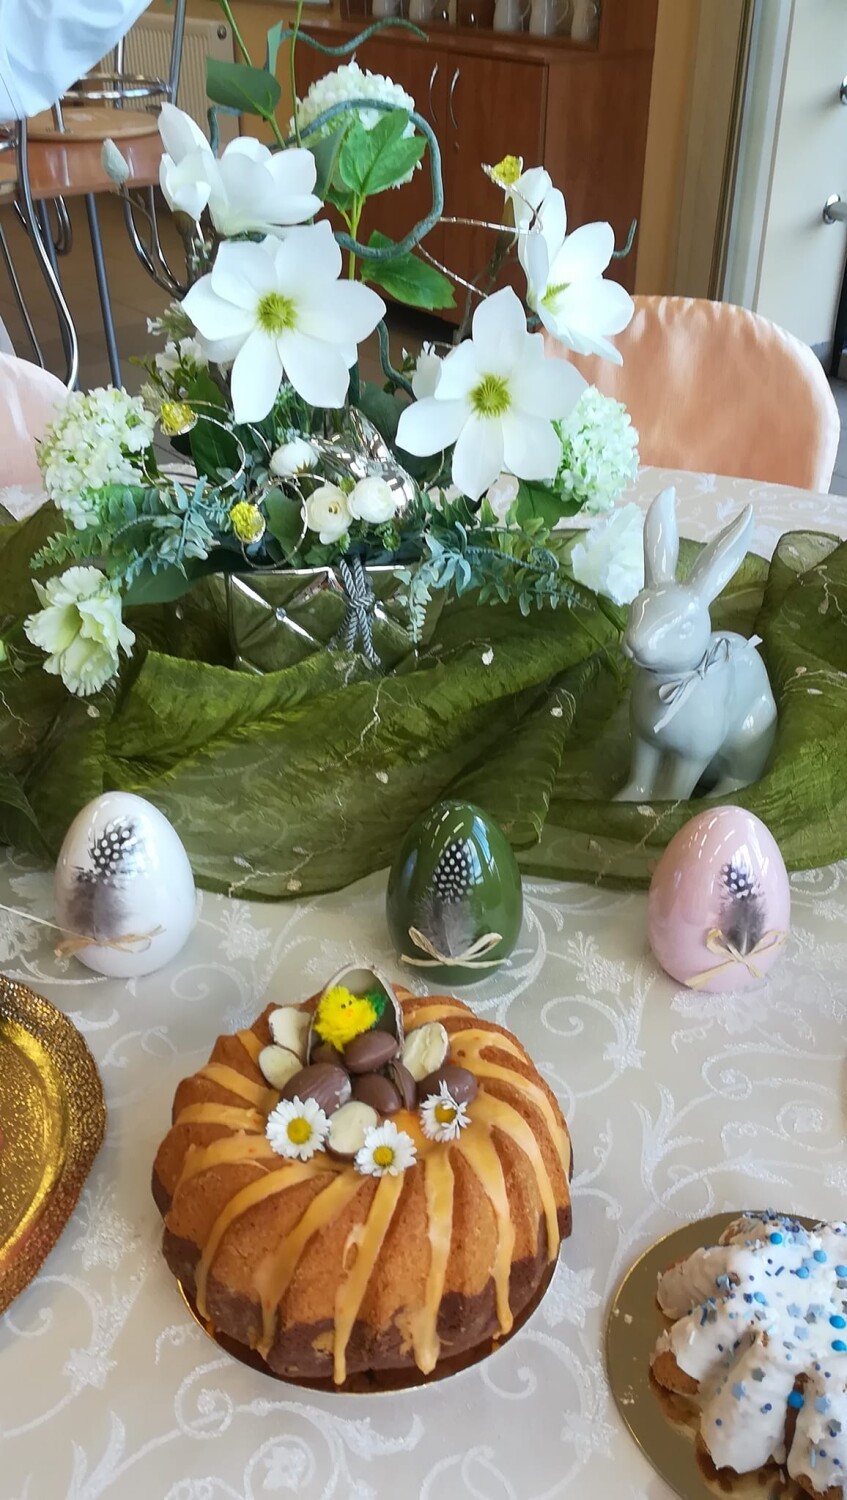 Babka Wielkanocna, czyli obowiązkowy element świątecznego stołu. Uczniowie Zespołu Szkół Gospodarczych upiekli małe dzieła sztuki 